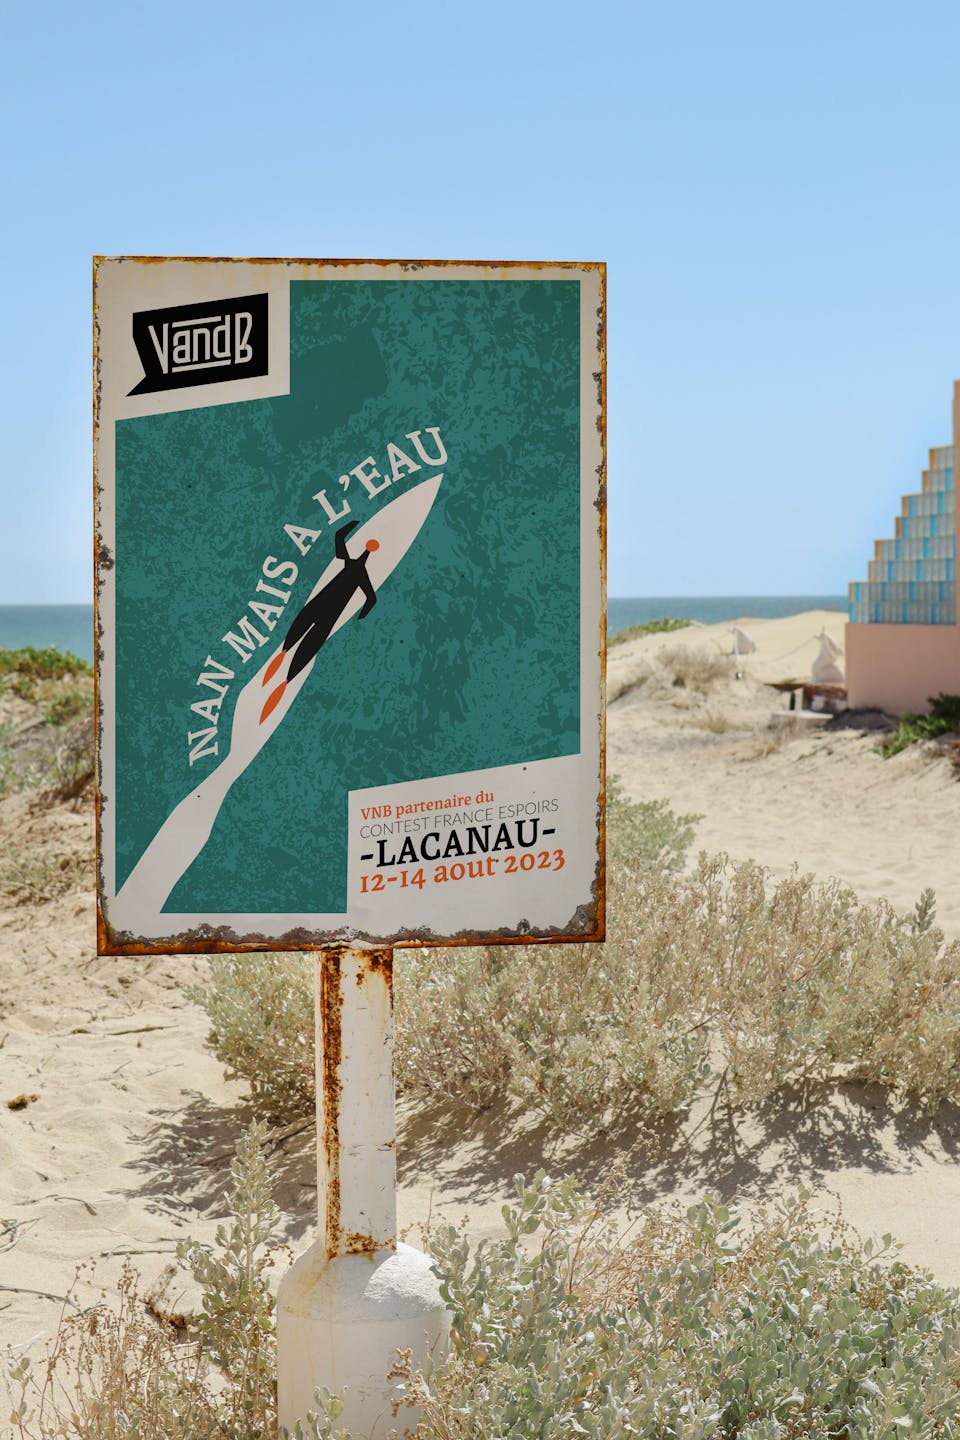 Mockup d'un panneau en bord de mer, basé sur la nouvelle identité visuelle du groupe V and B. On y voit un surfeur glissant sur l'eau, ainsi que l'inscription "Nan mais à l'eau".